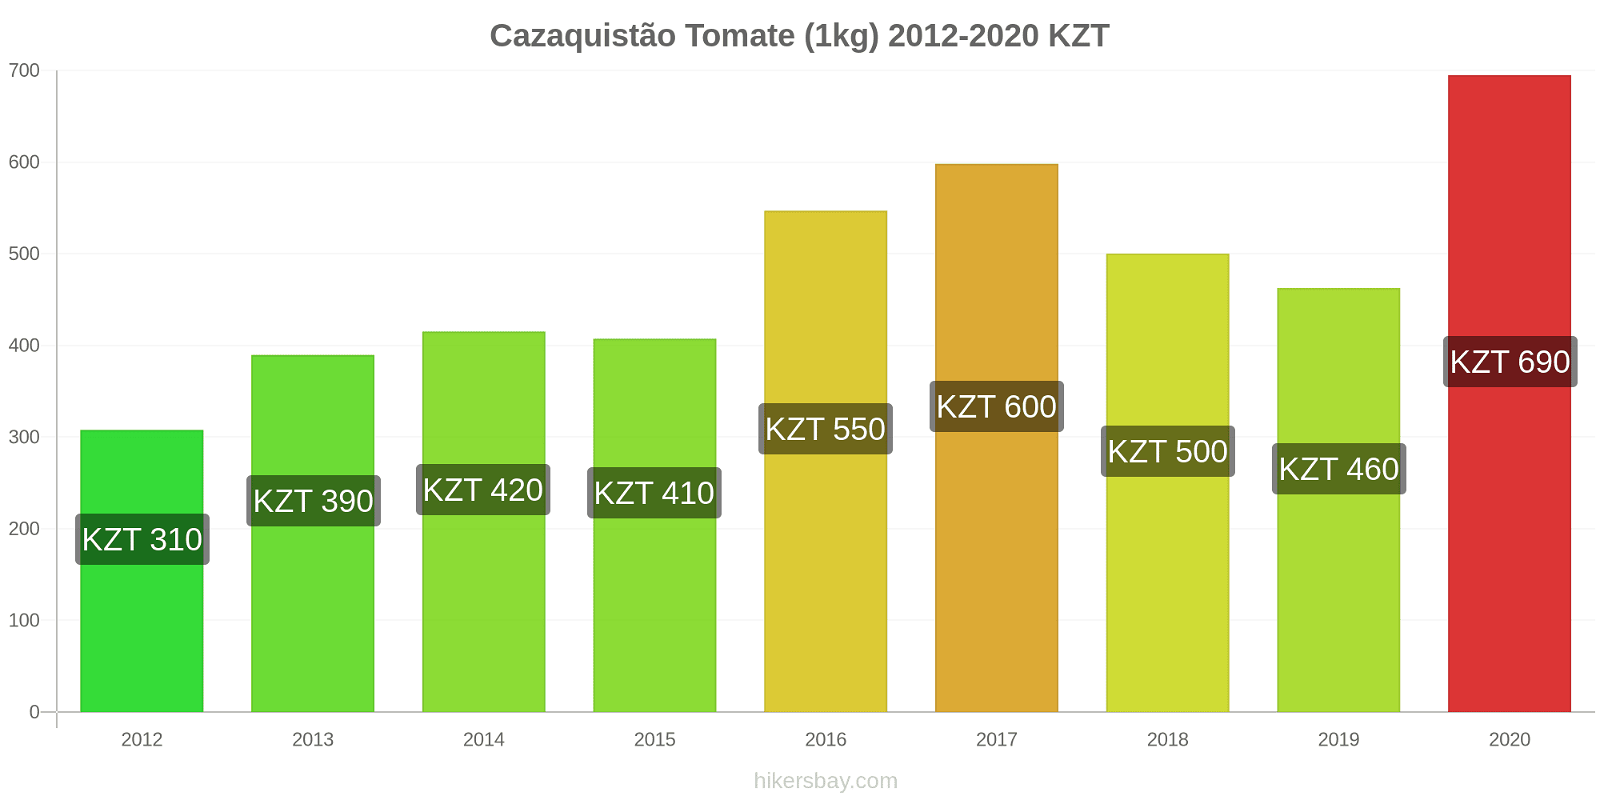 Cazaquistão variação de preço Tomate (1kg) hikersbay.com